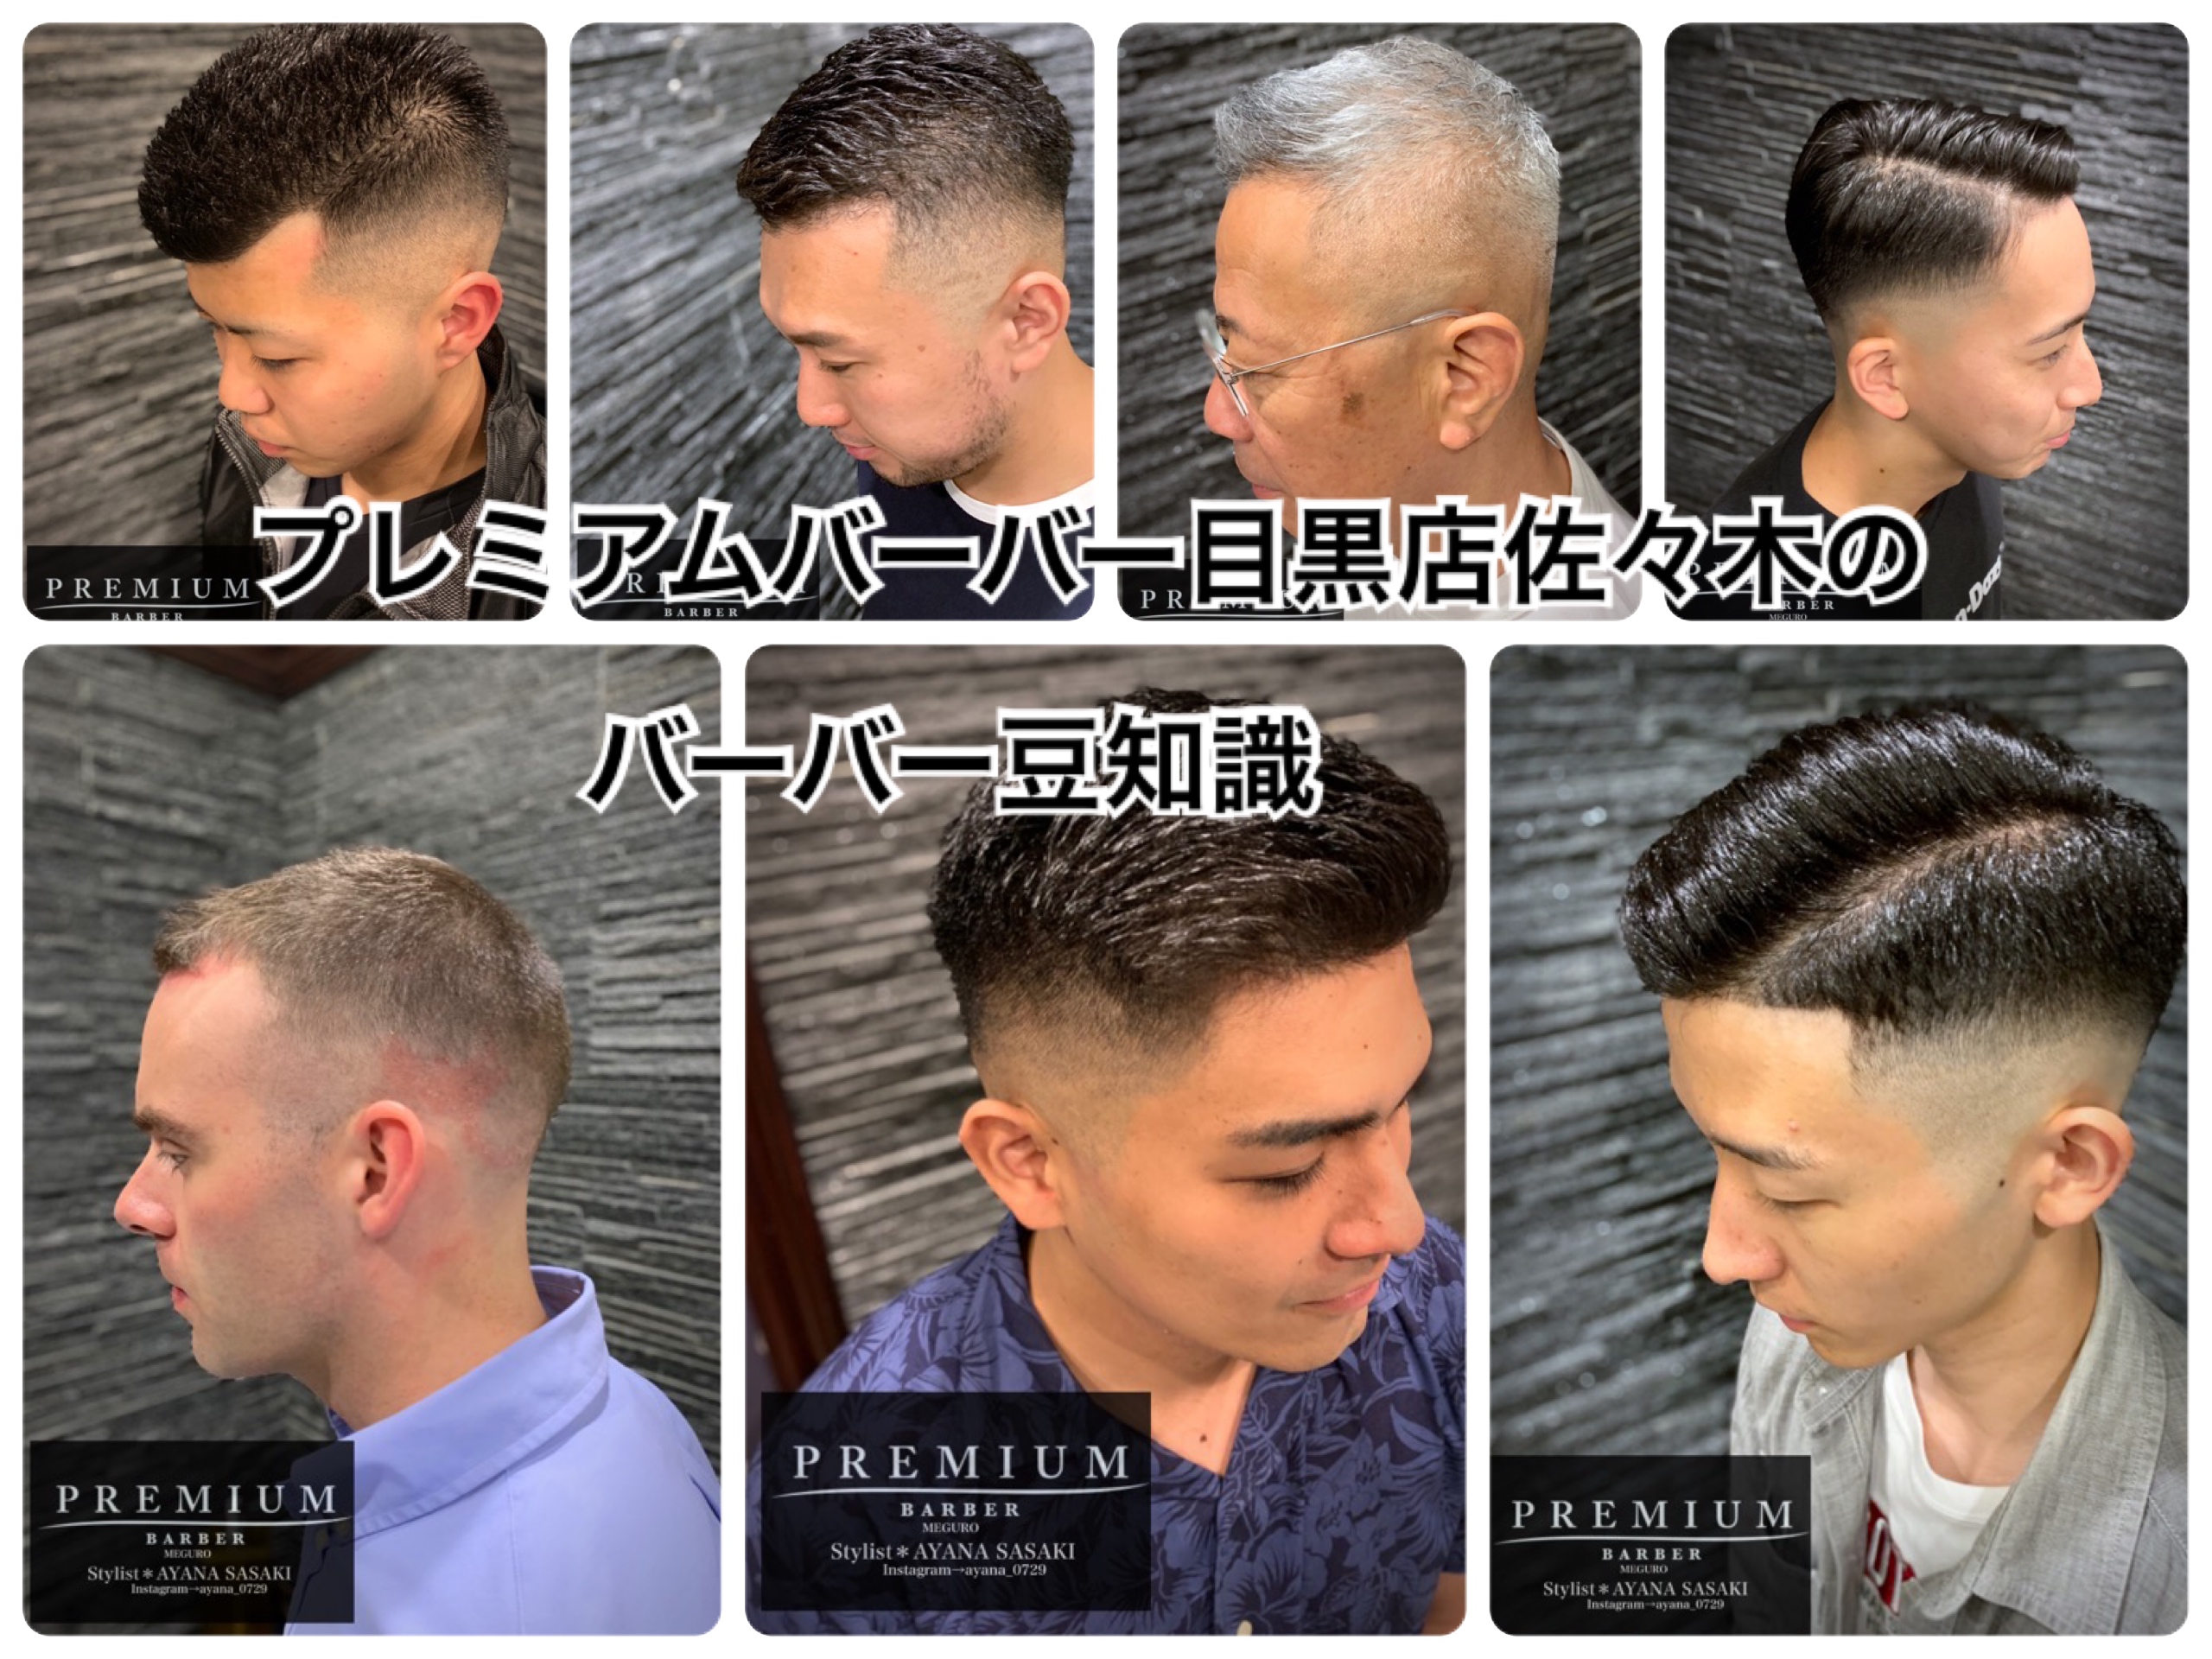 ラグビー選手の髪型 かっこいいバーバースタイル ブログ 渋谷原宿店 高級理容室 床屋 ヘアサロン Premium Barber プレミアムバーバー